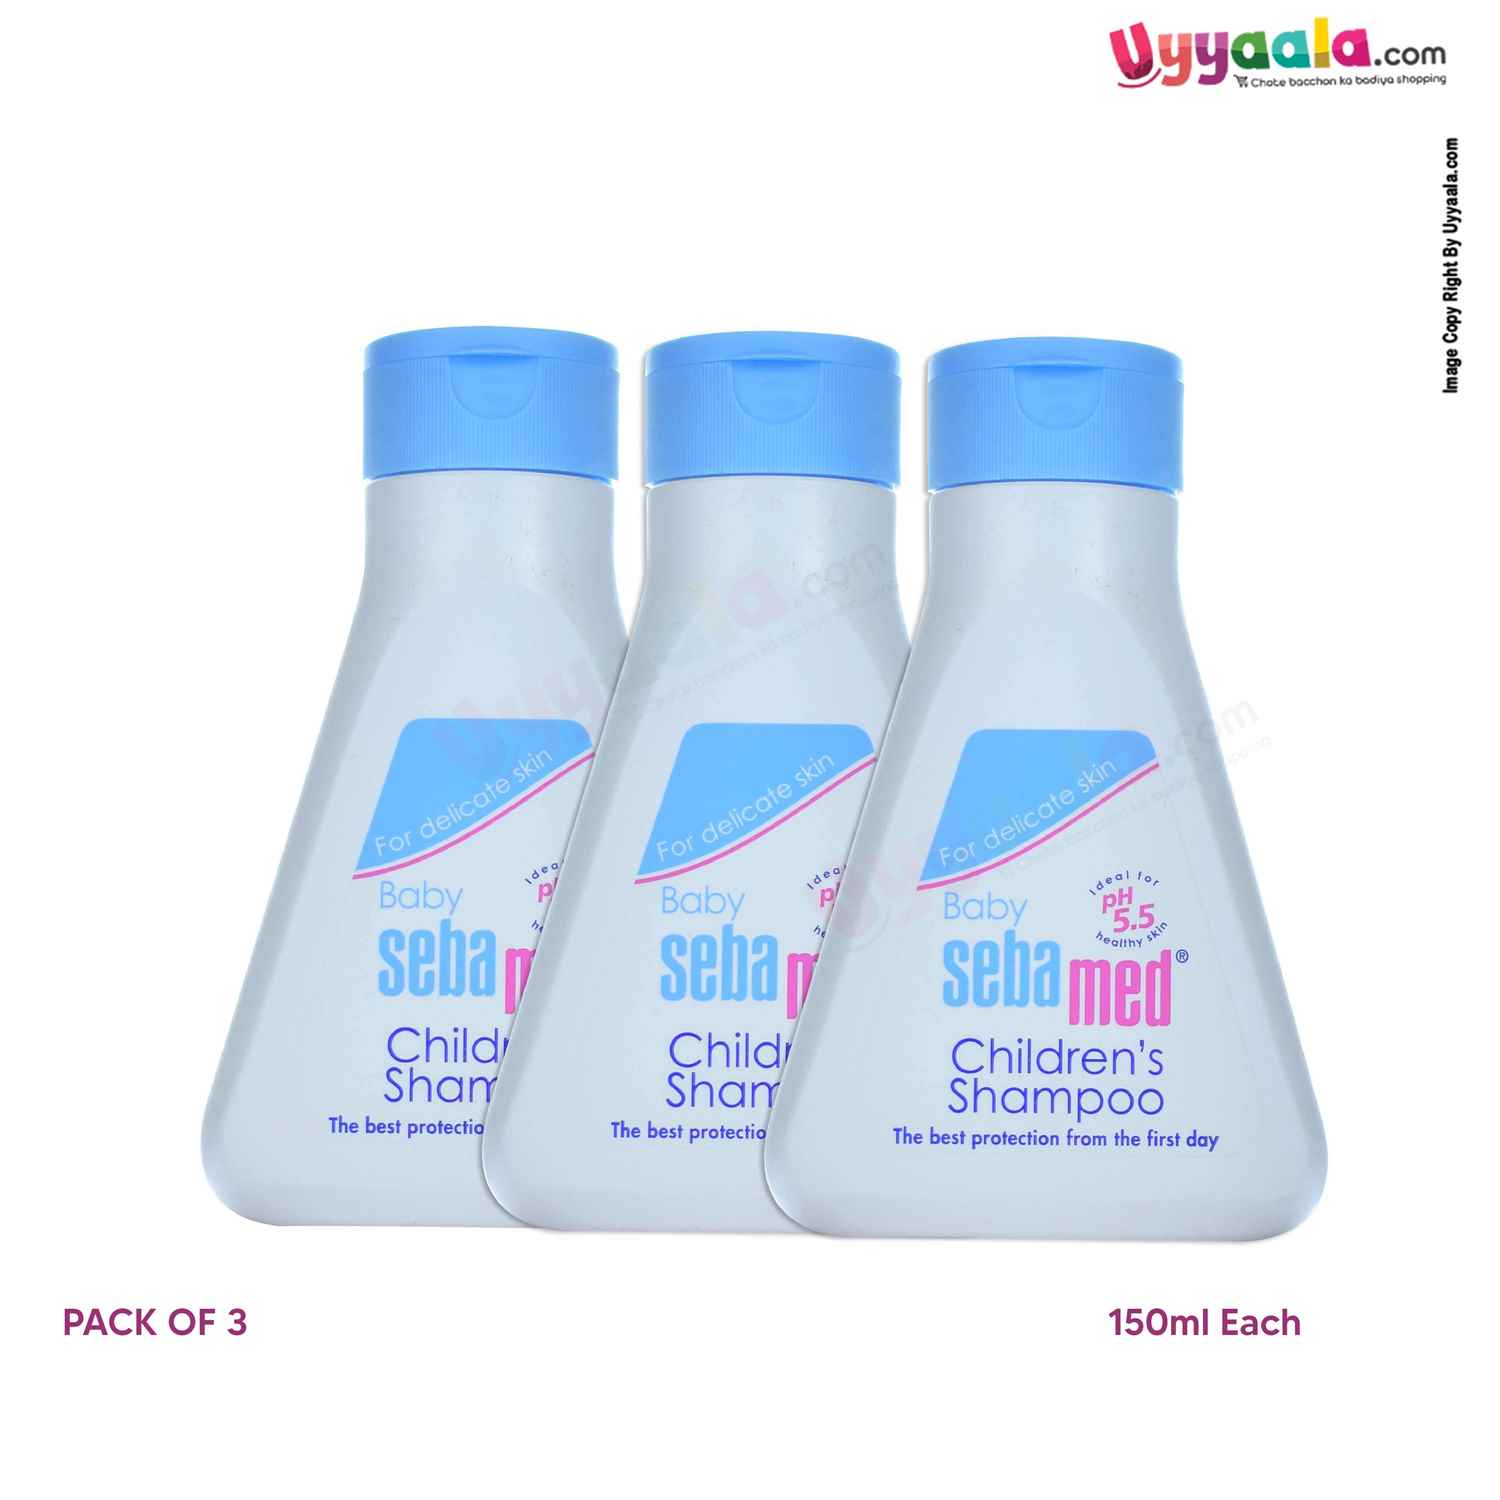 Sebamed Children’s Shampoo,Pack of 3 (150ml Each)